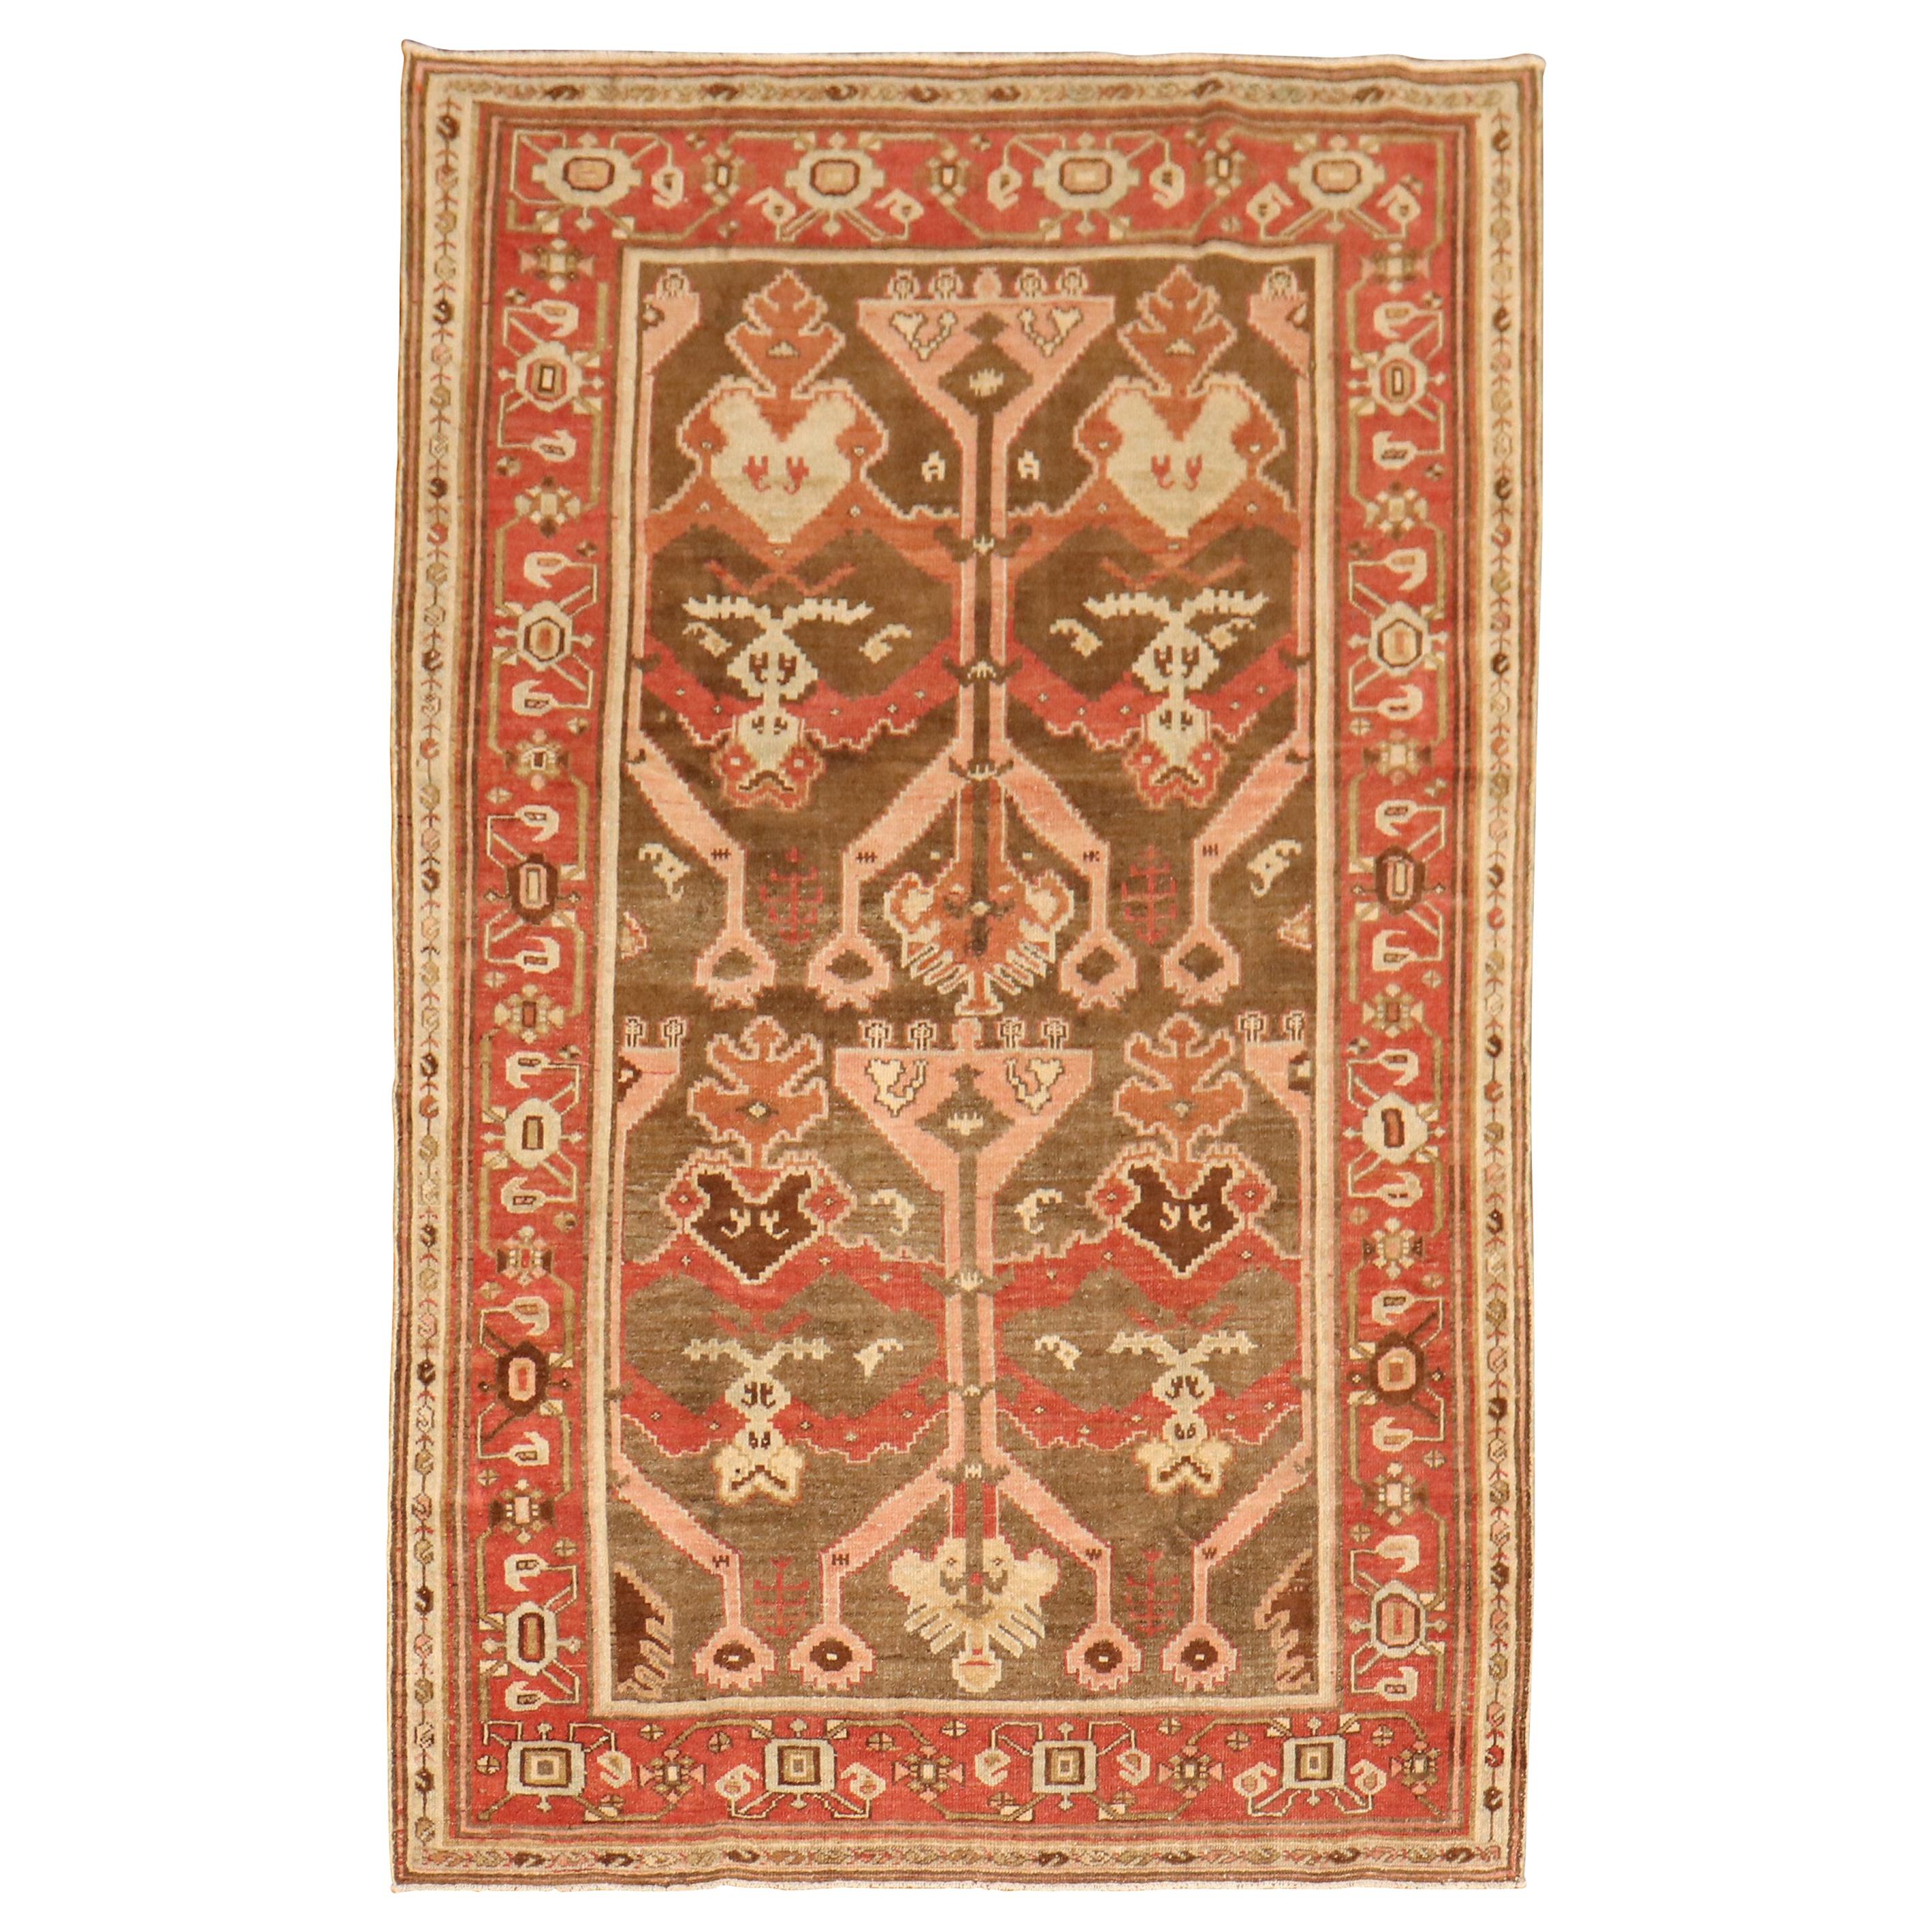 Persischer Teppich in Braun, Rostfarben